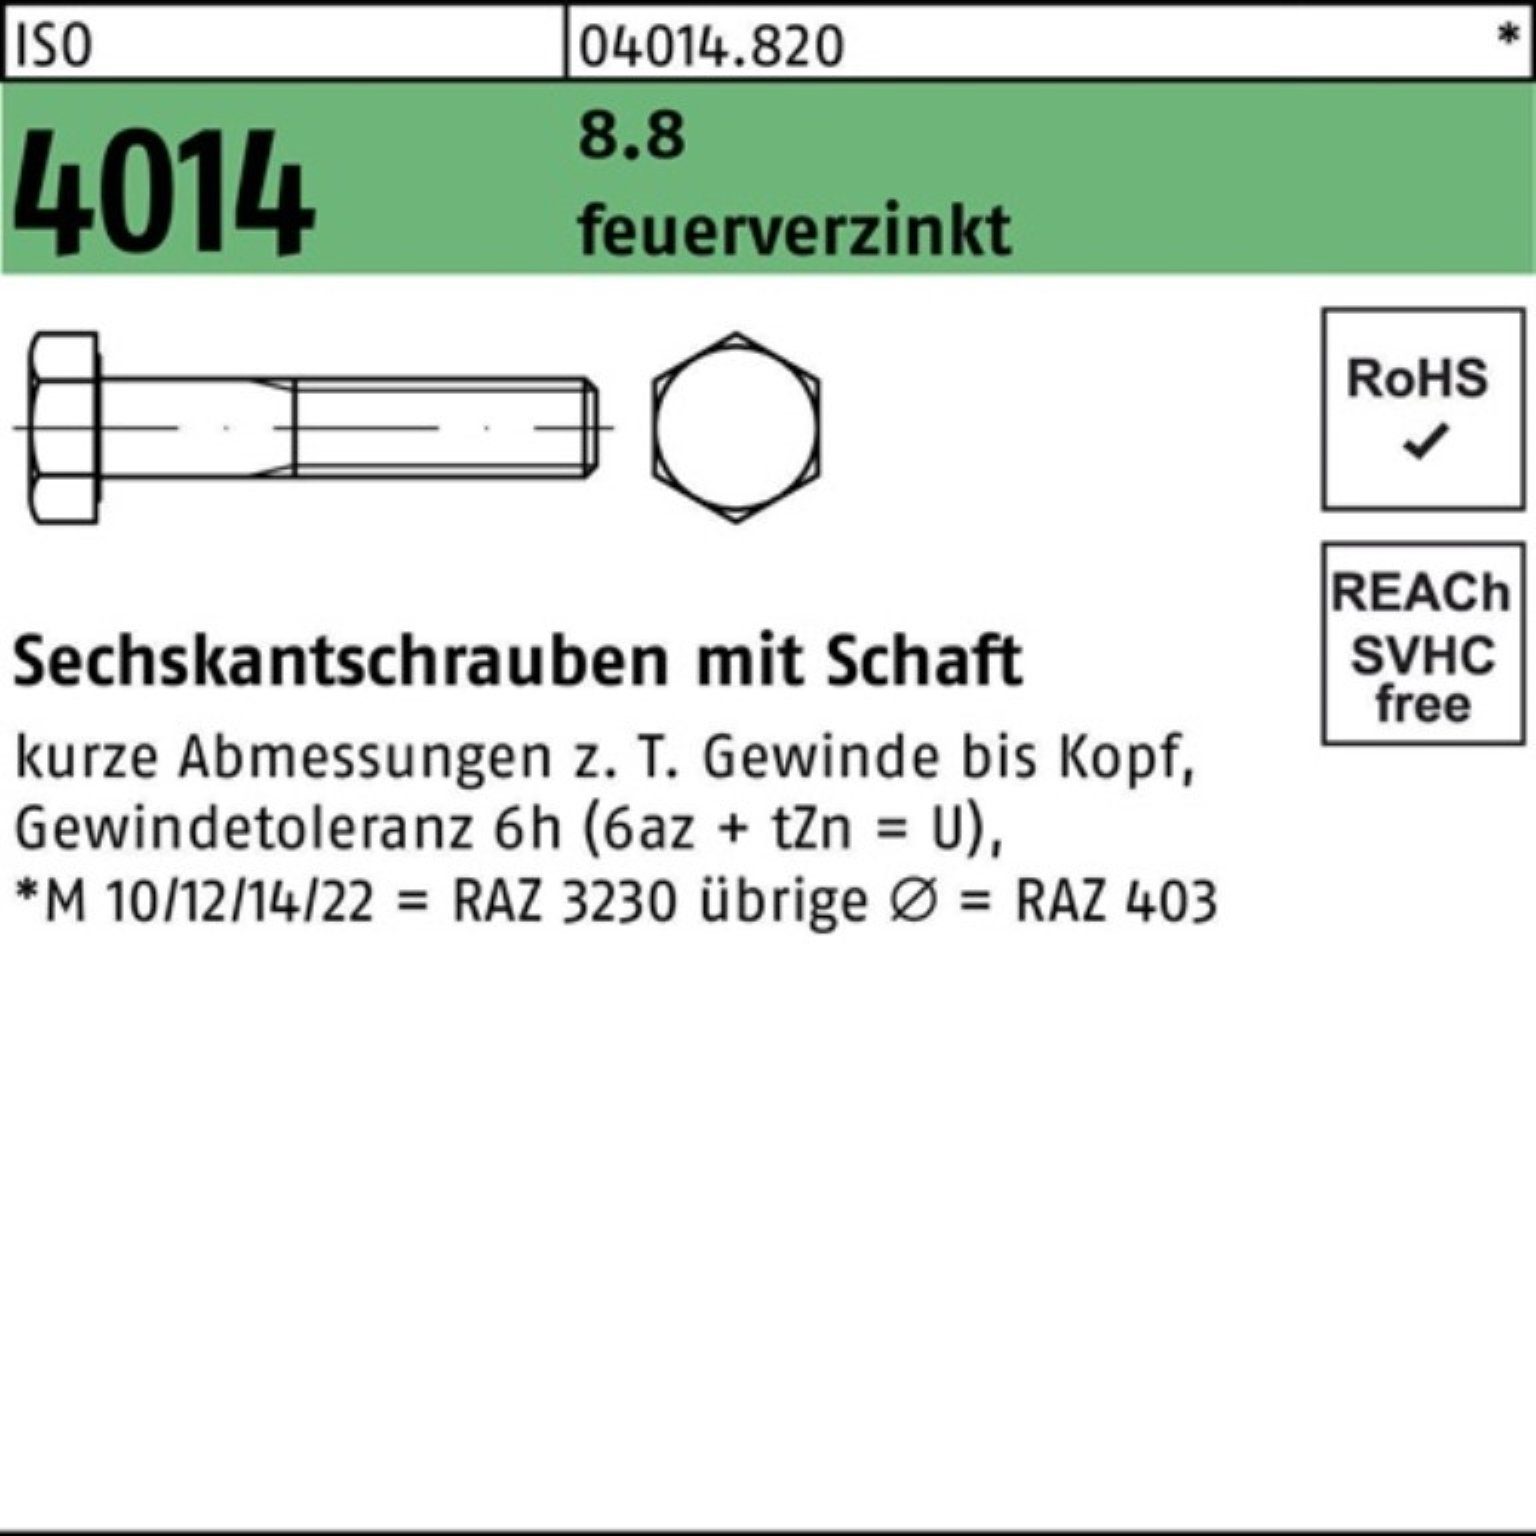 ISO Schaft Bufab M16x Sechskantschraube Pack feuerverz. 8.8 Sechskantschraube 4014 260 1 100er